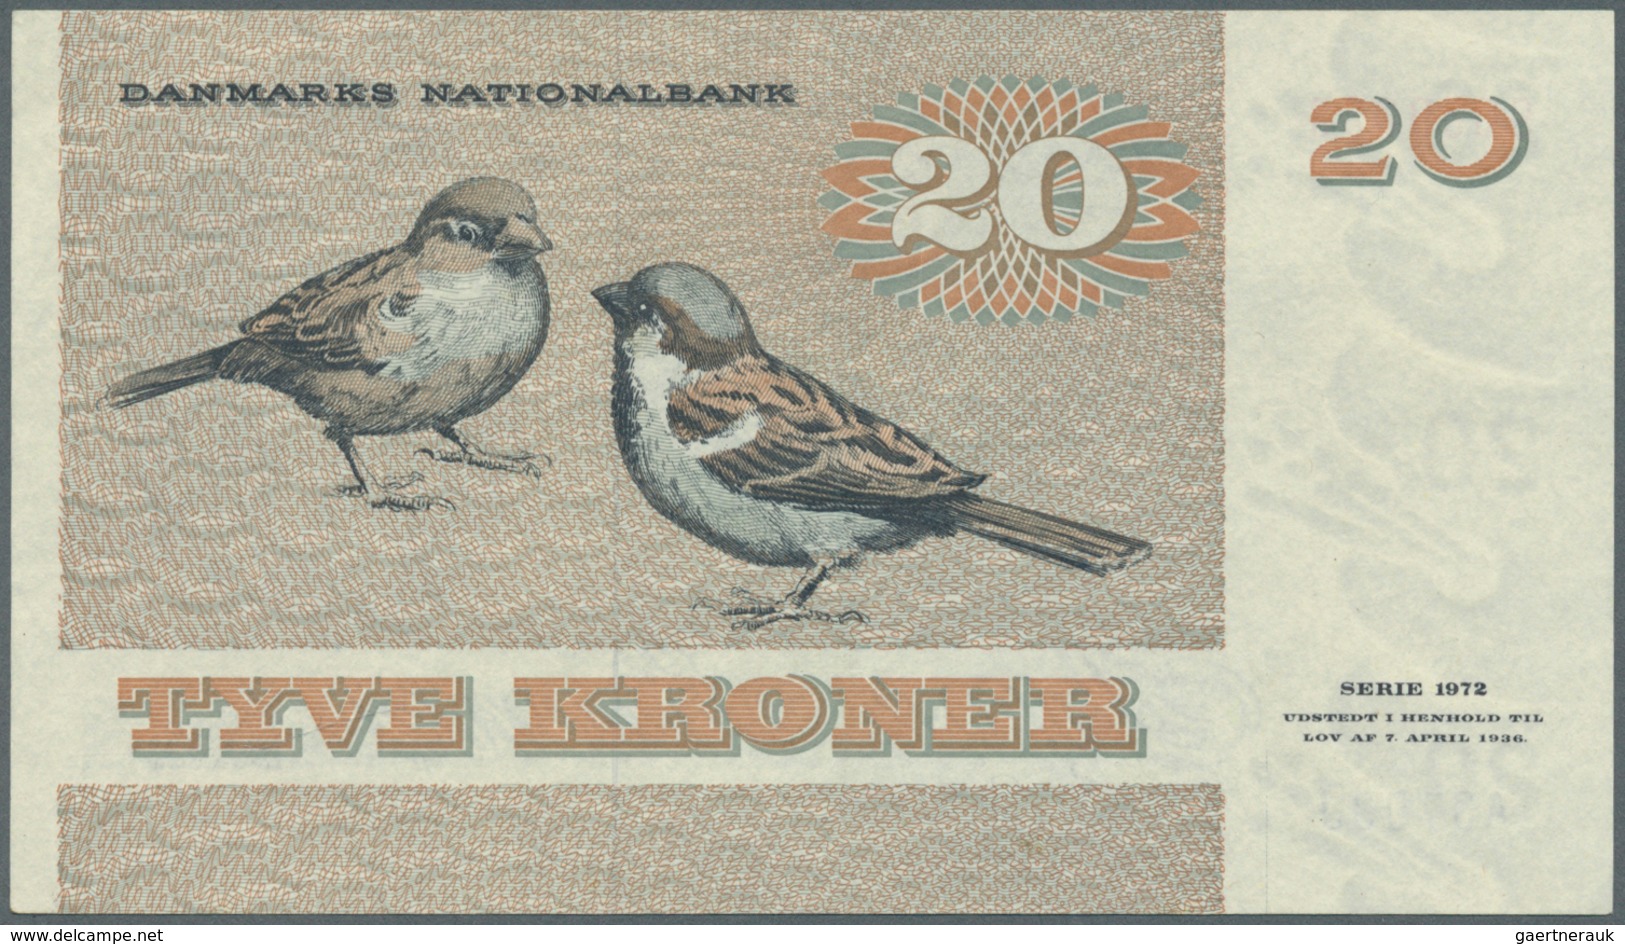 Denmark  / Dänemark: Set Of 10 Notes Containing 10 Kroner 1976 & 1977 P. 48 (XF & UNC), 2x 20 Kroner - Dinamarca